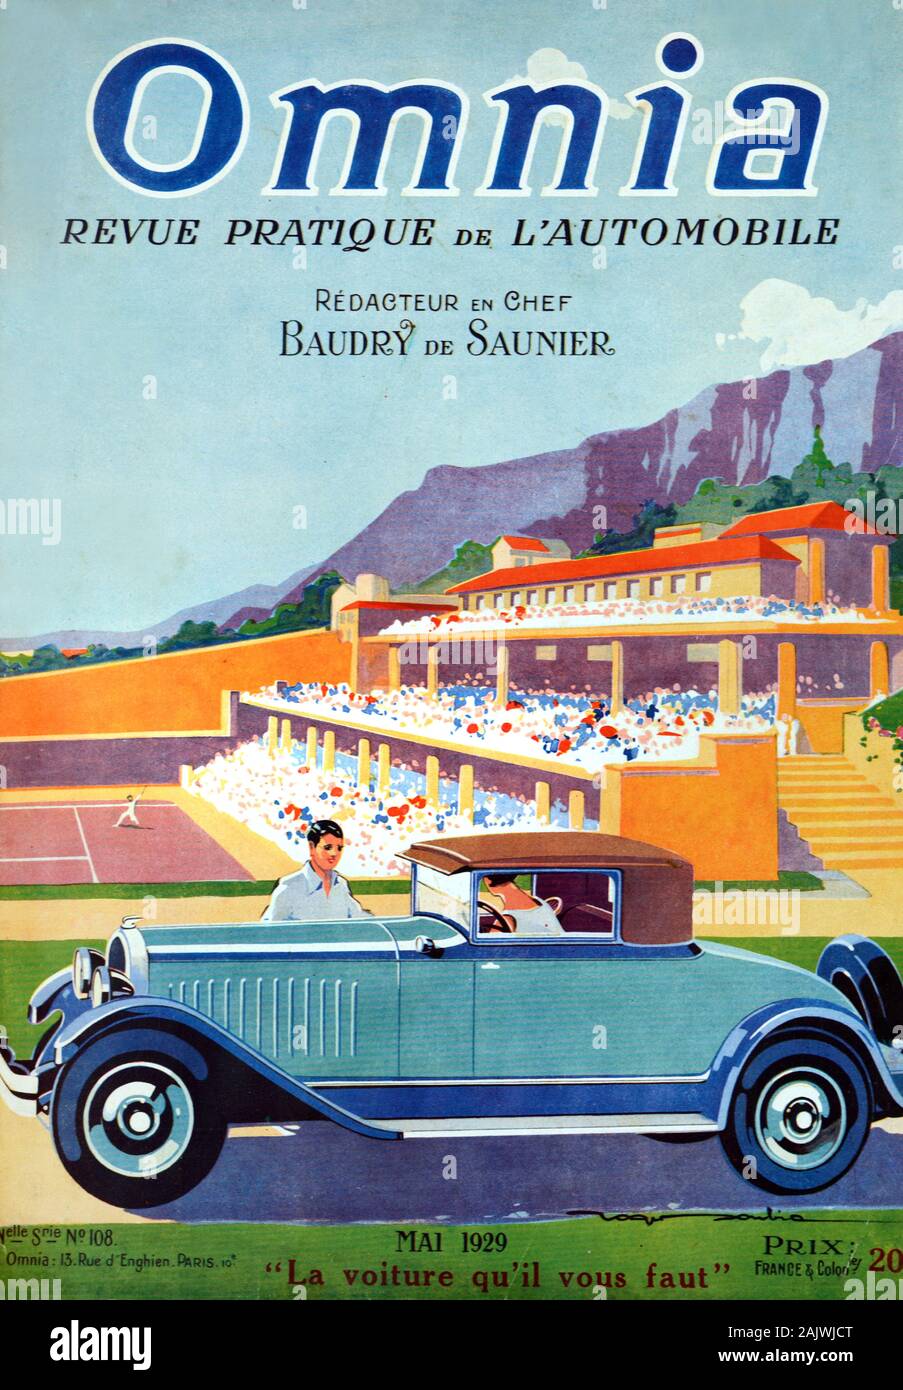 Auto d'epoca tipo Citroën C4 (1928) Coupé o Coupe di fronte al Monte Carlo Country Club e campi da Tennis, fondata nel 1928. Coperchio anteriore del francese antico Motoring Magazine Omnia Maggio 1929. Foto Stock